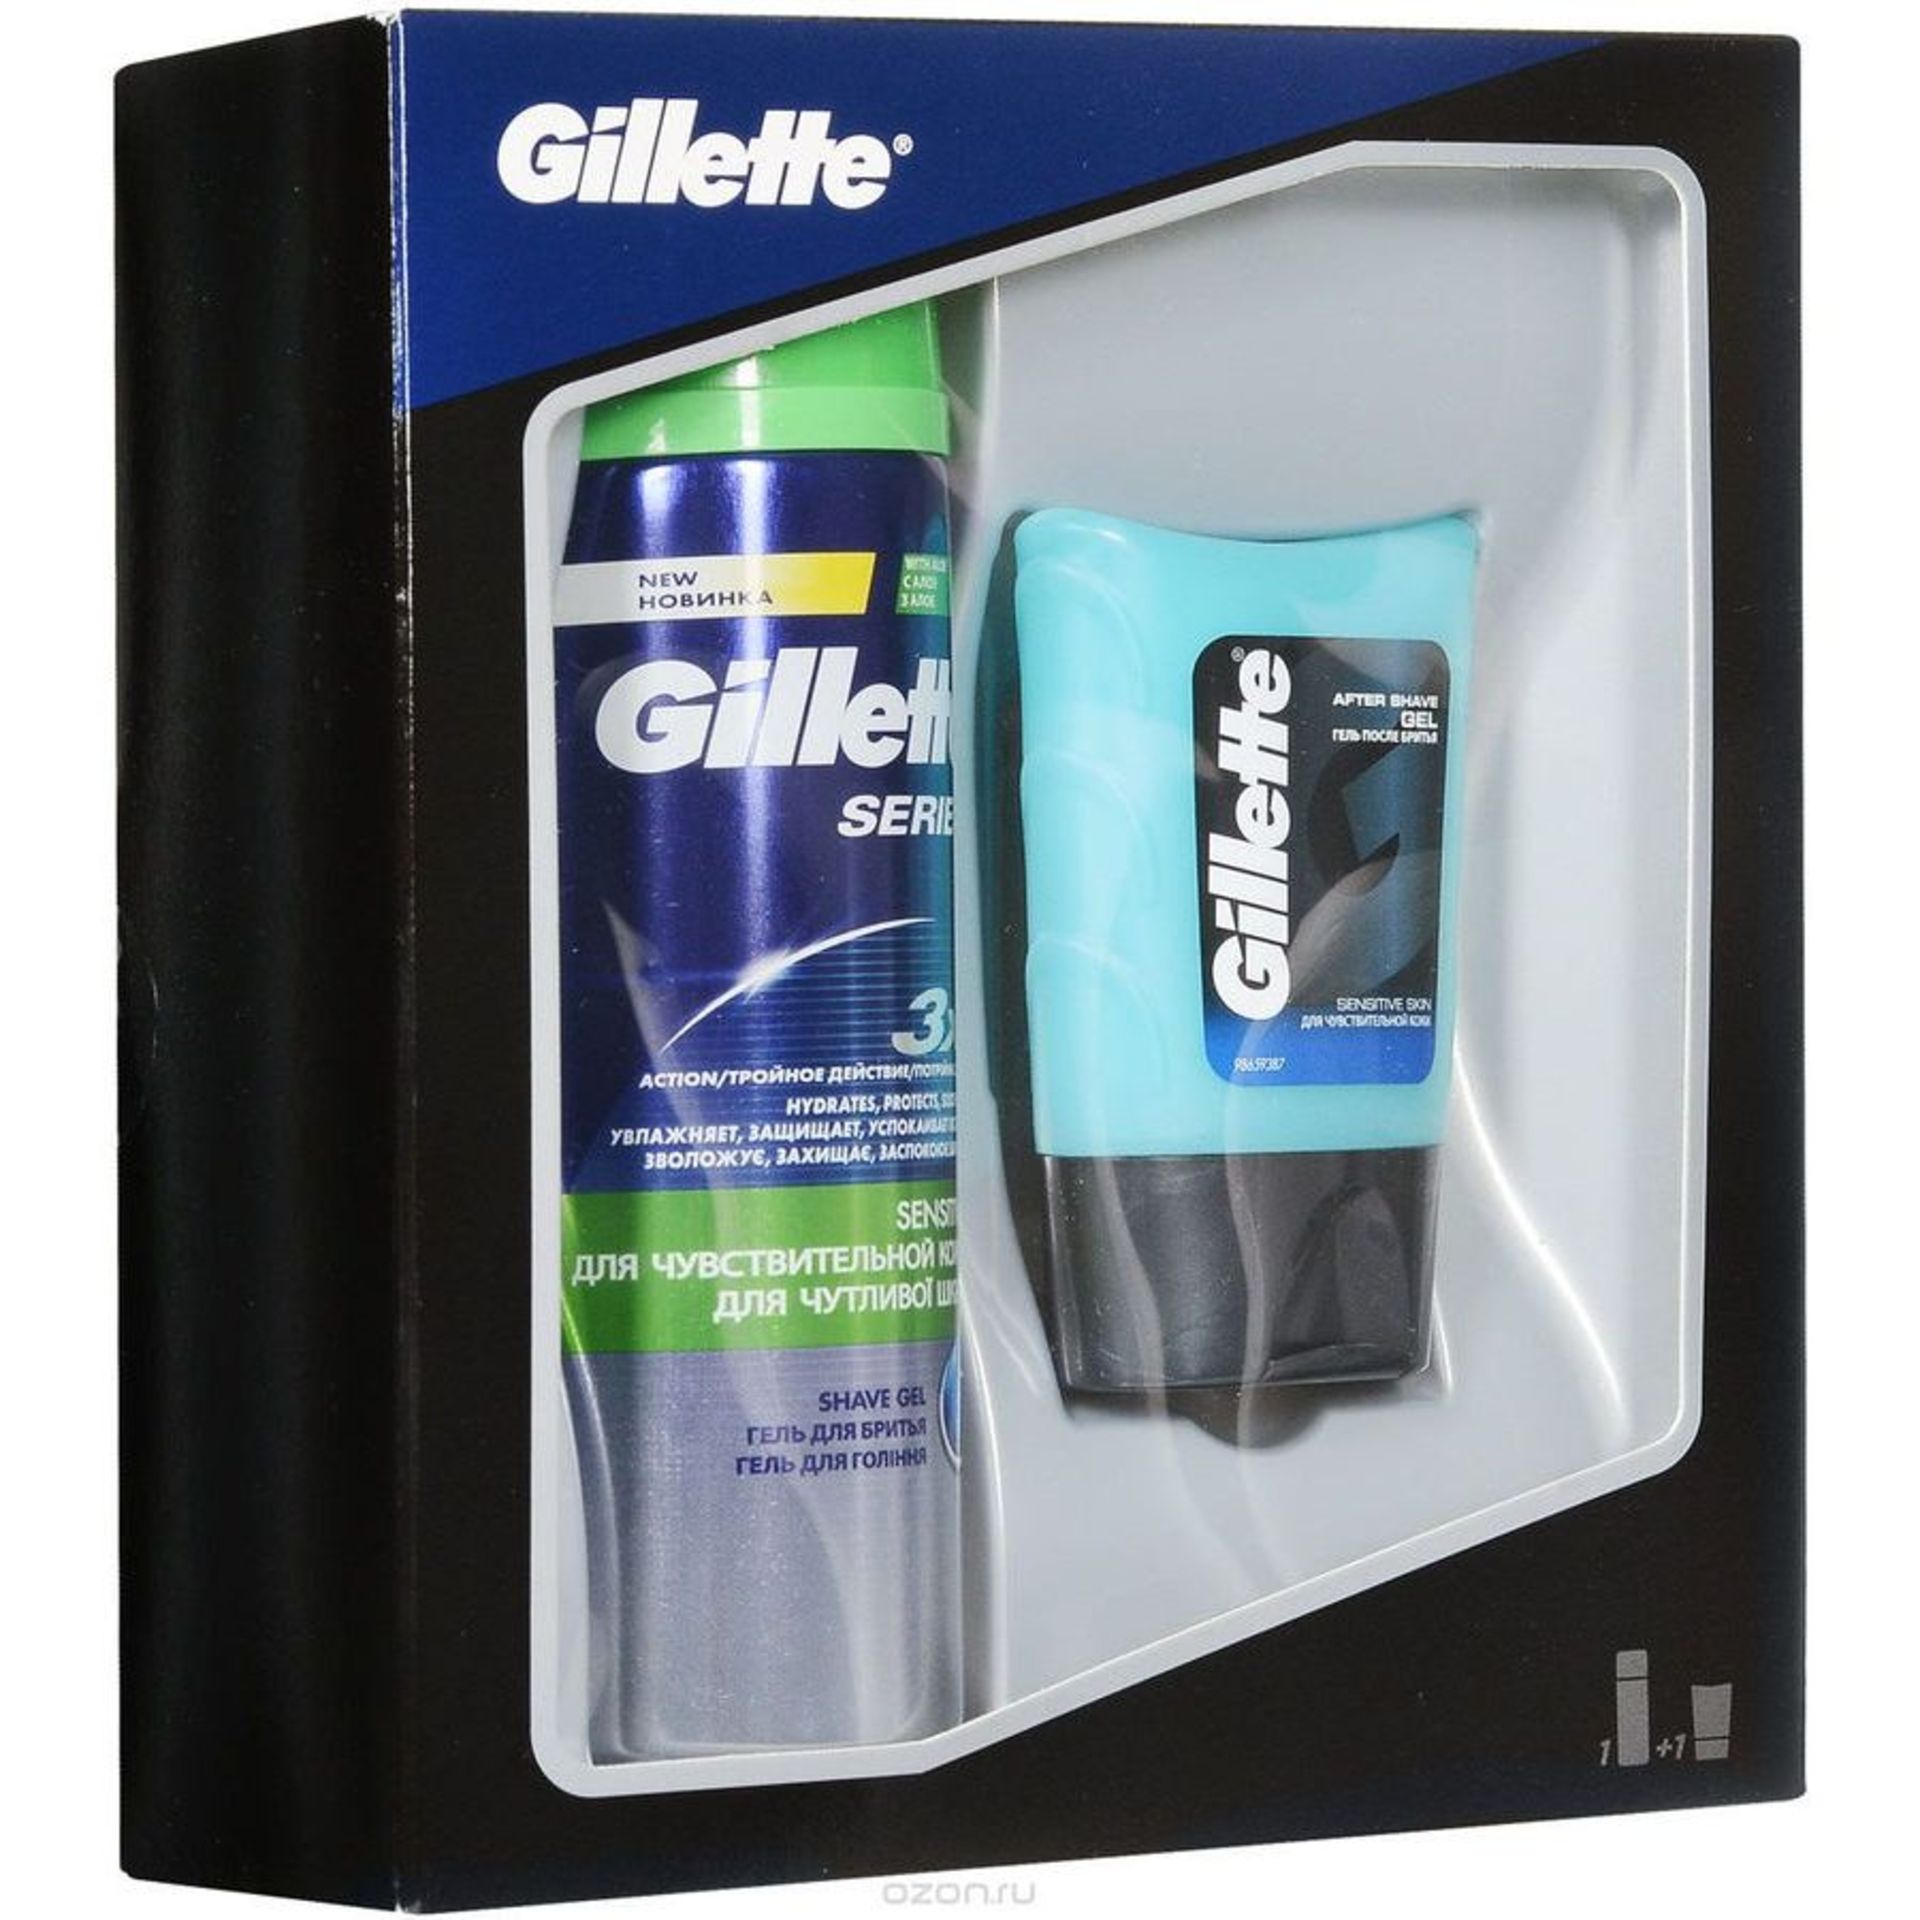 V *TRADE QTY* Brand New Gillette Series Sensitive Shave Gel 200ml & Aftershave Gel For Sensitive